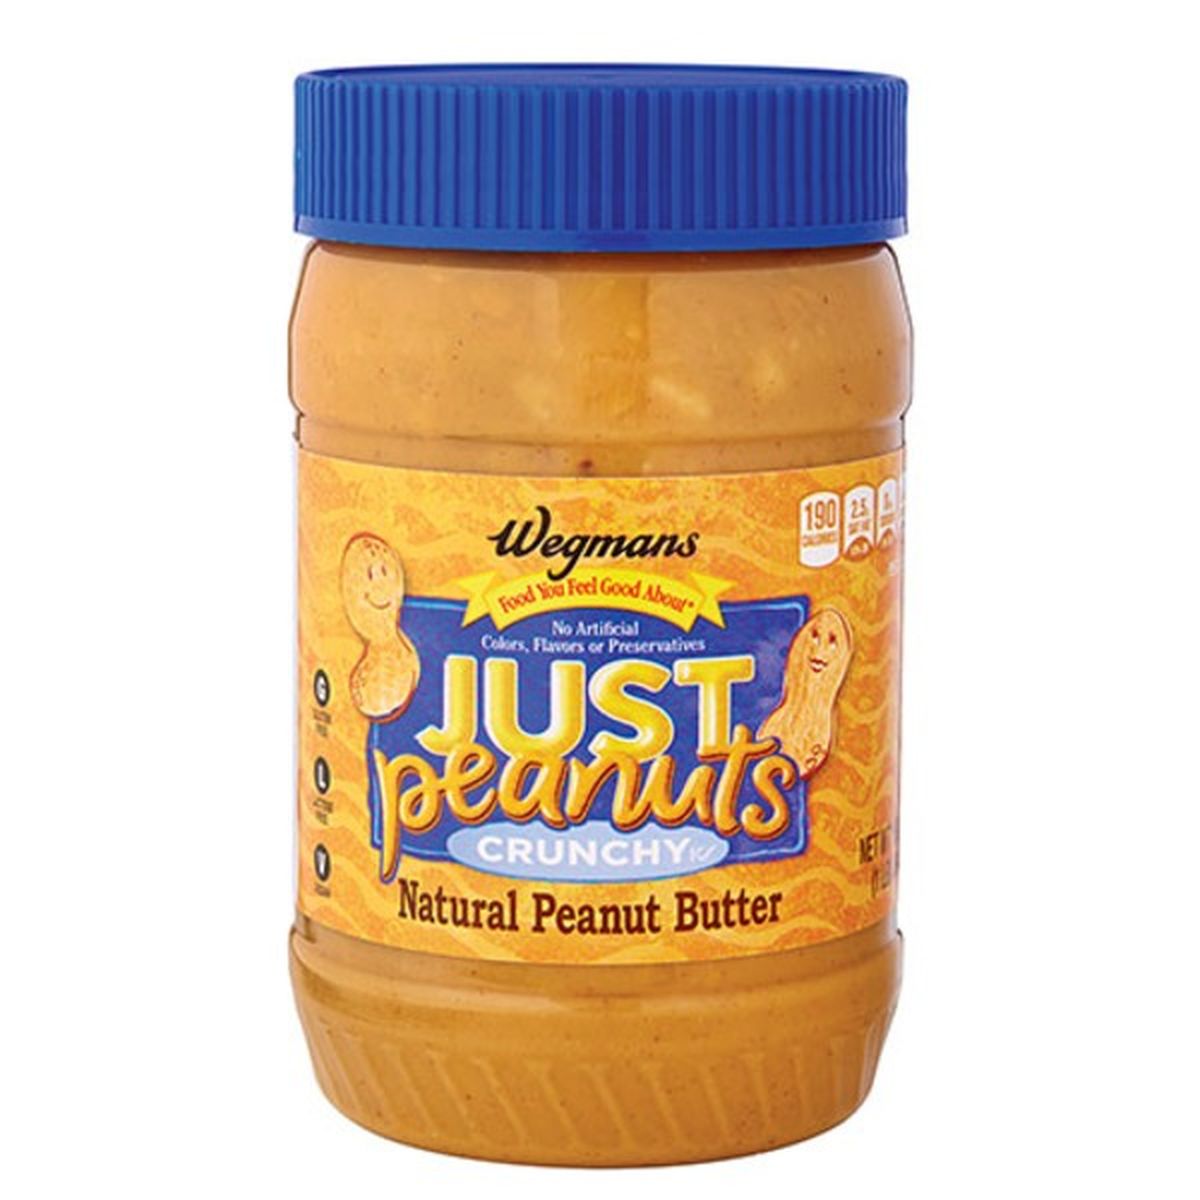 Calories in Wegmans Just Peanuts Stir Crunchy Peanut Butter